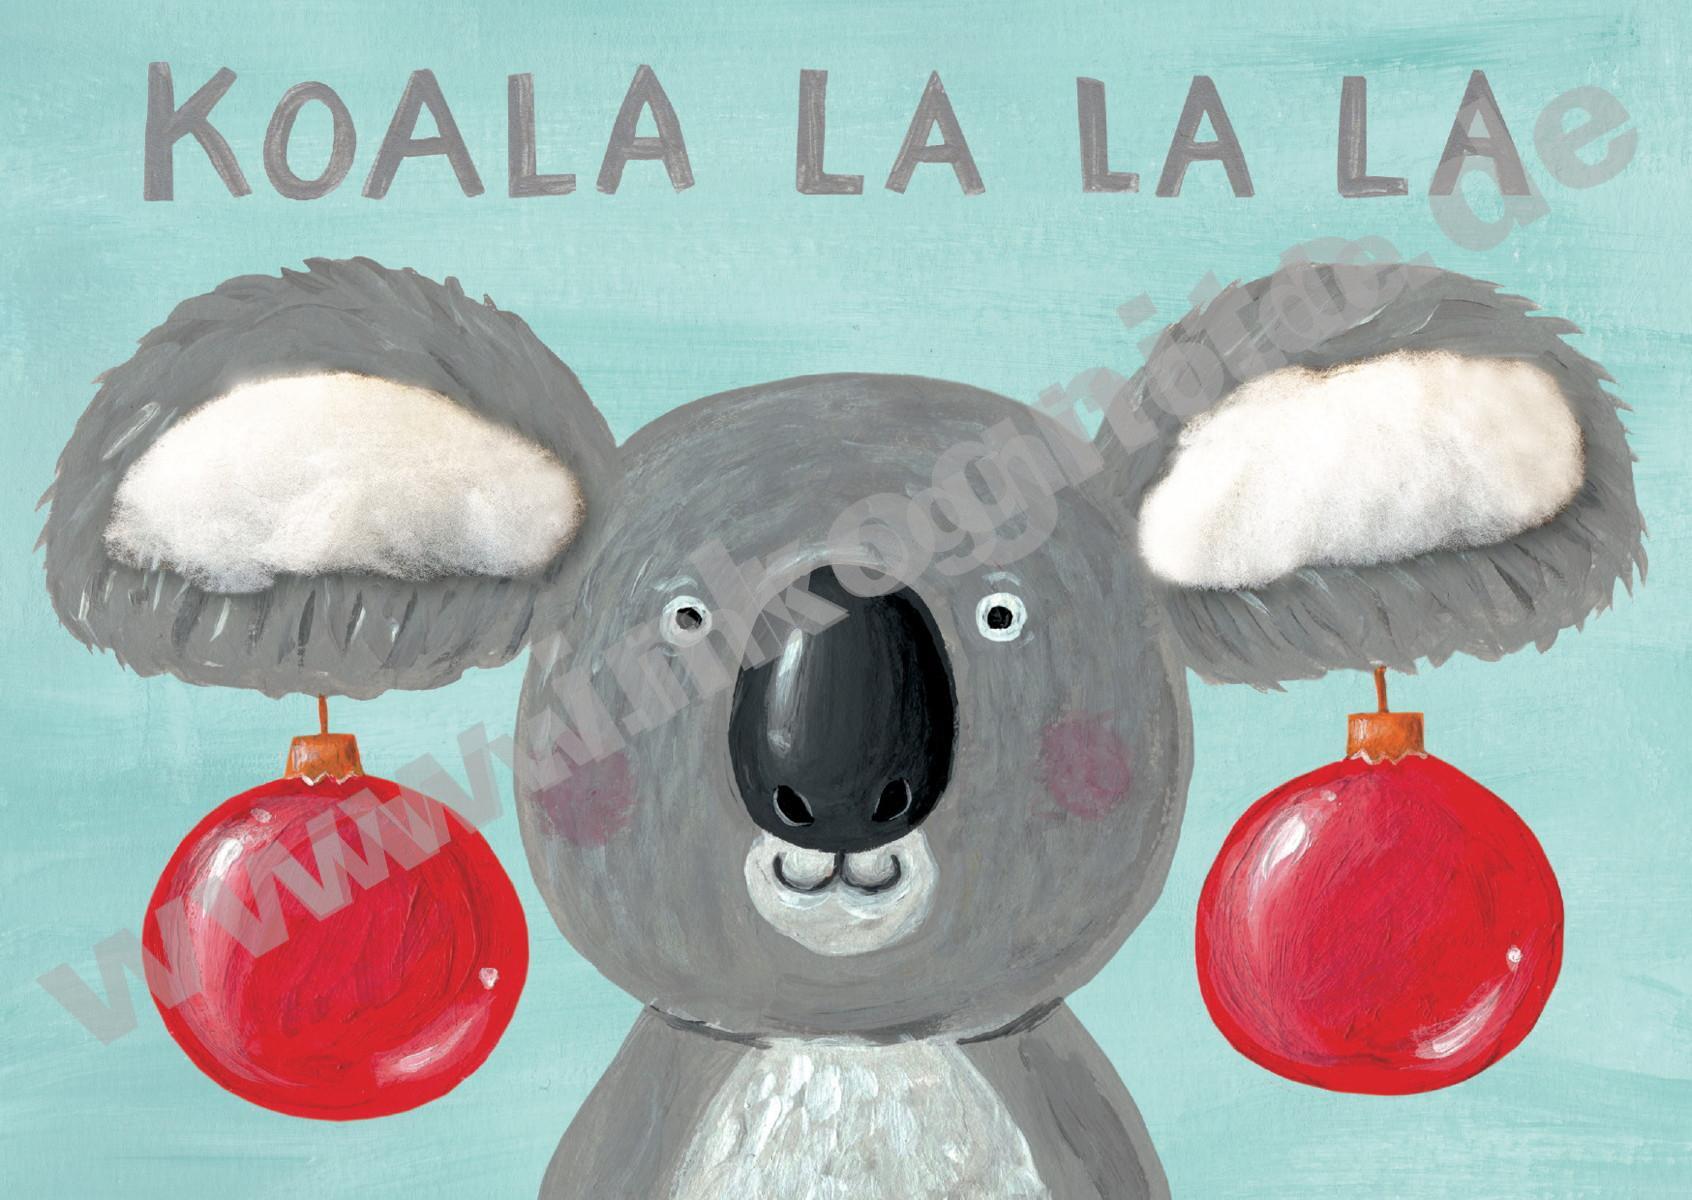 Plüschkarte "Koala la la la"